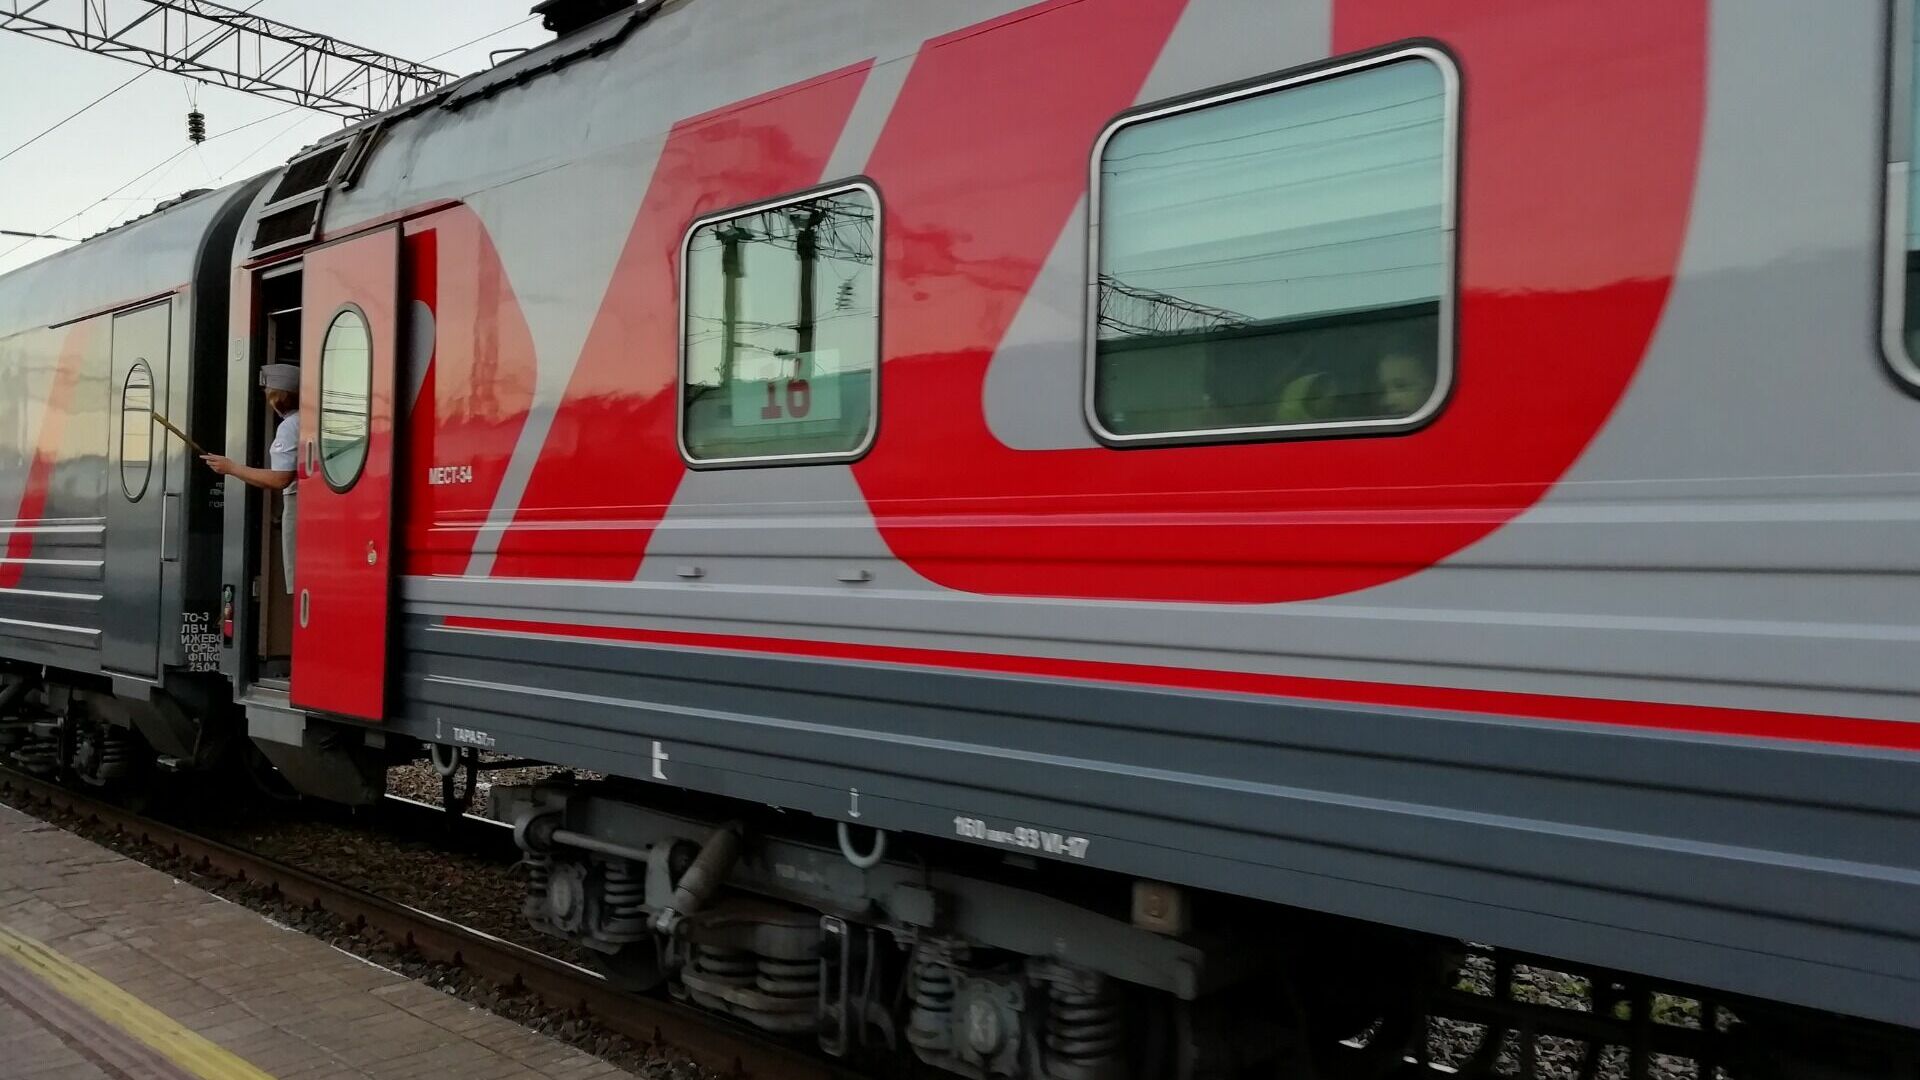 Тюмень вошла в топ туристических направлений по России на поезде